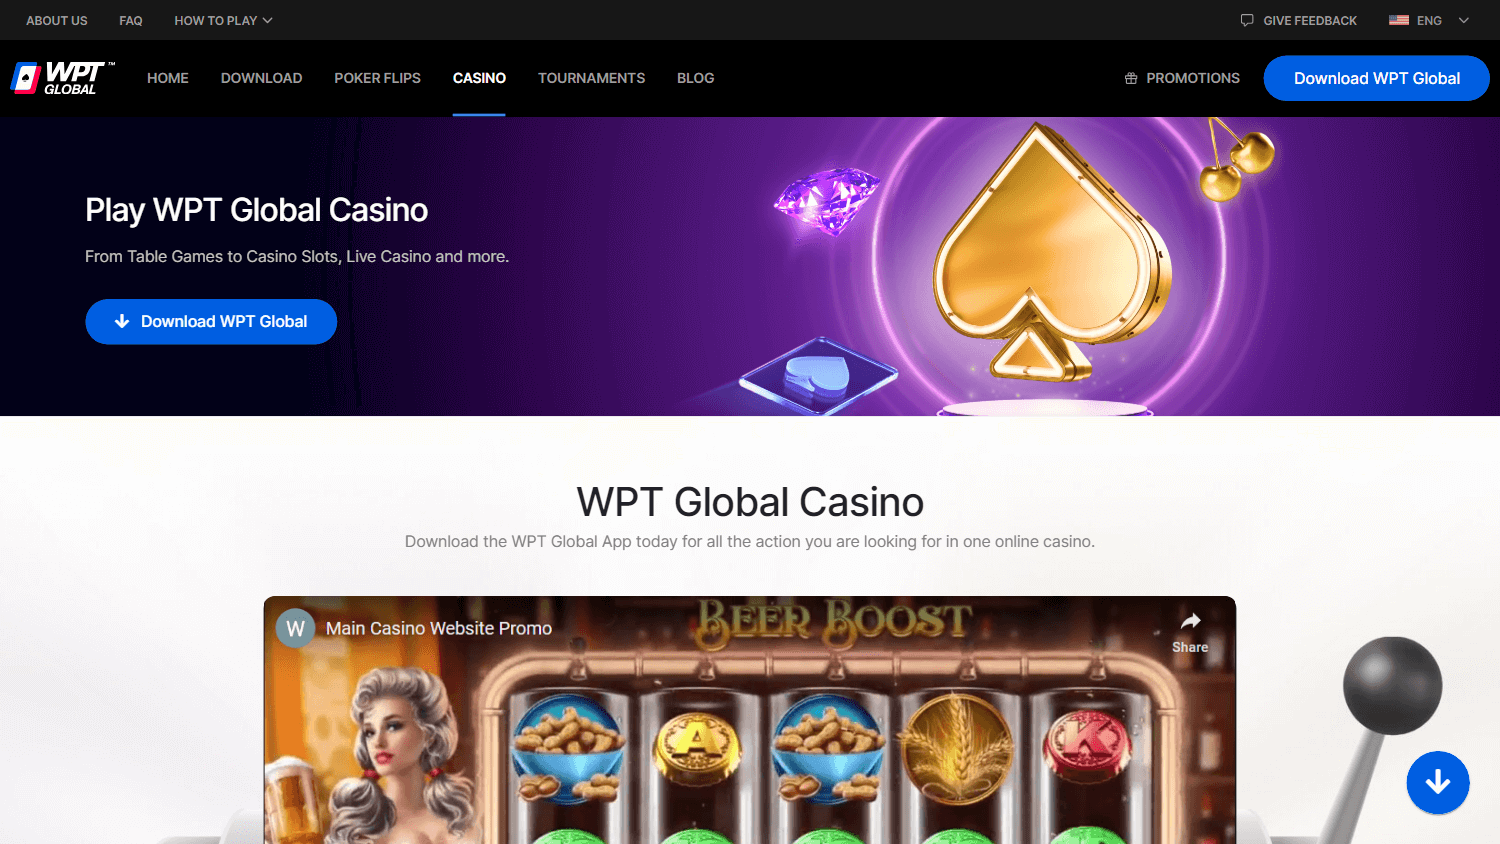 wpt_global_casino_homepage_desktop